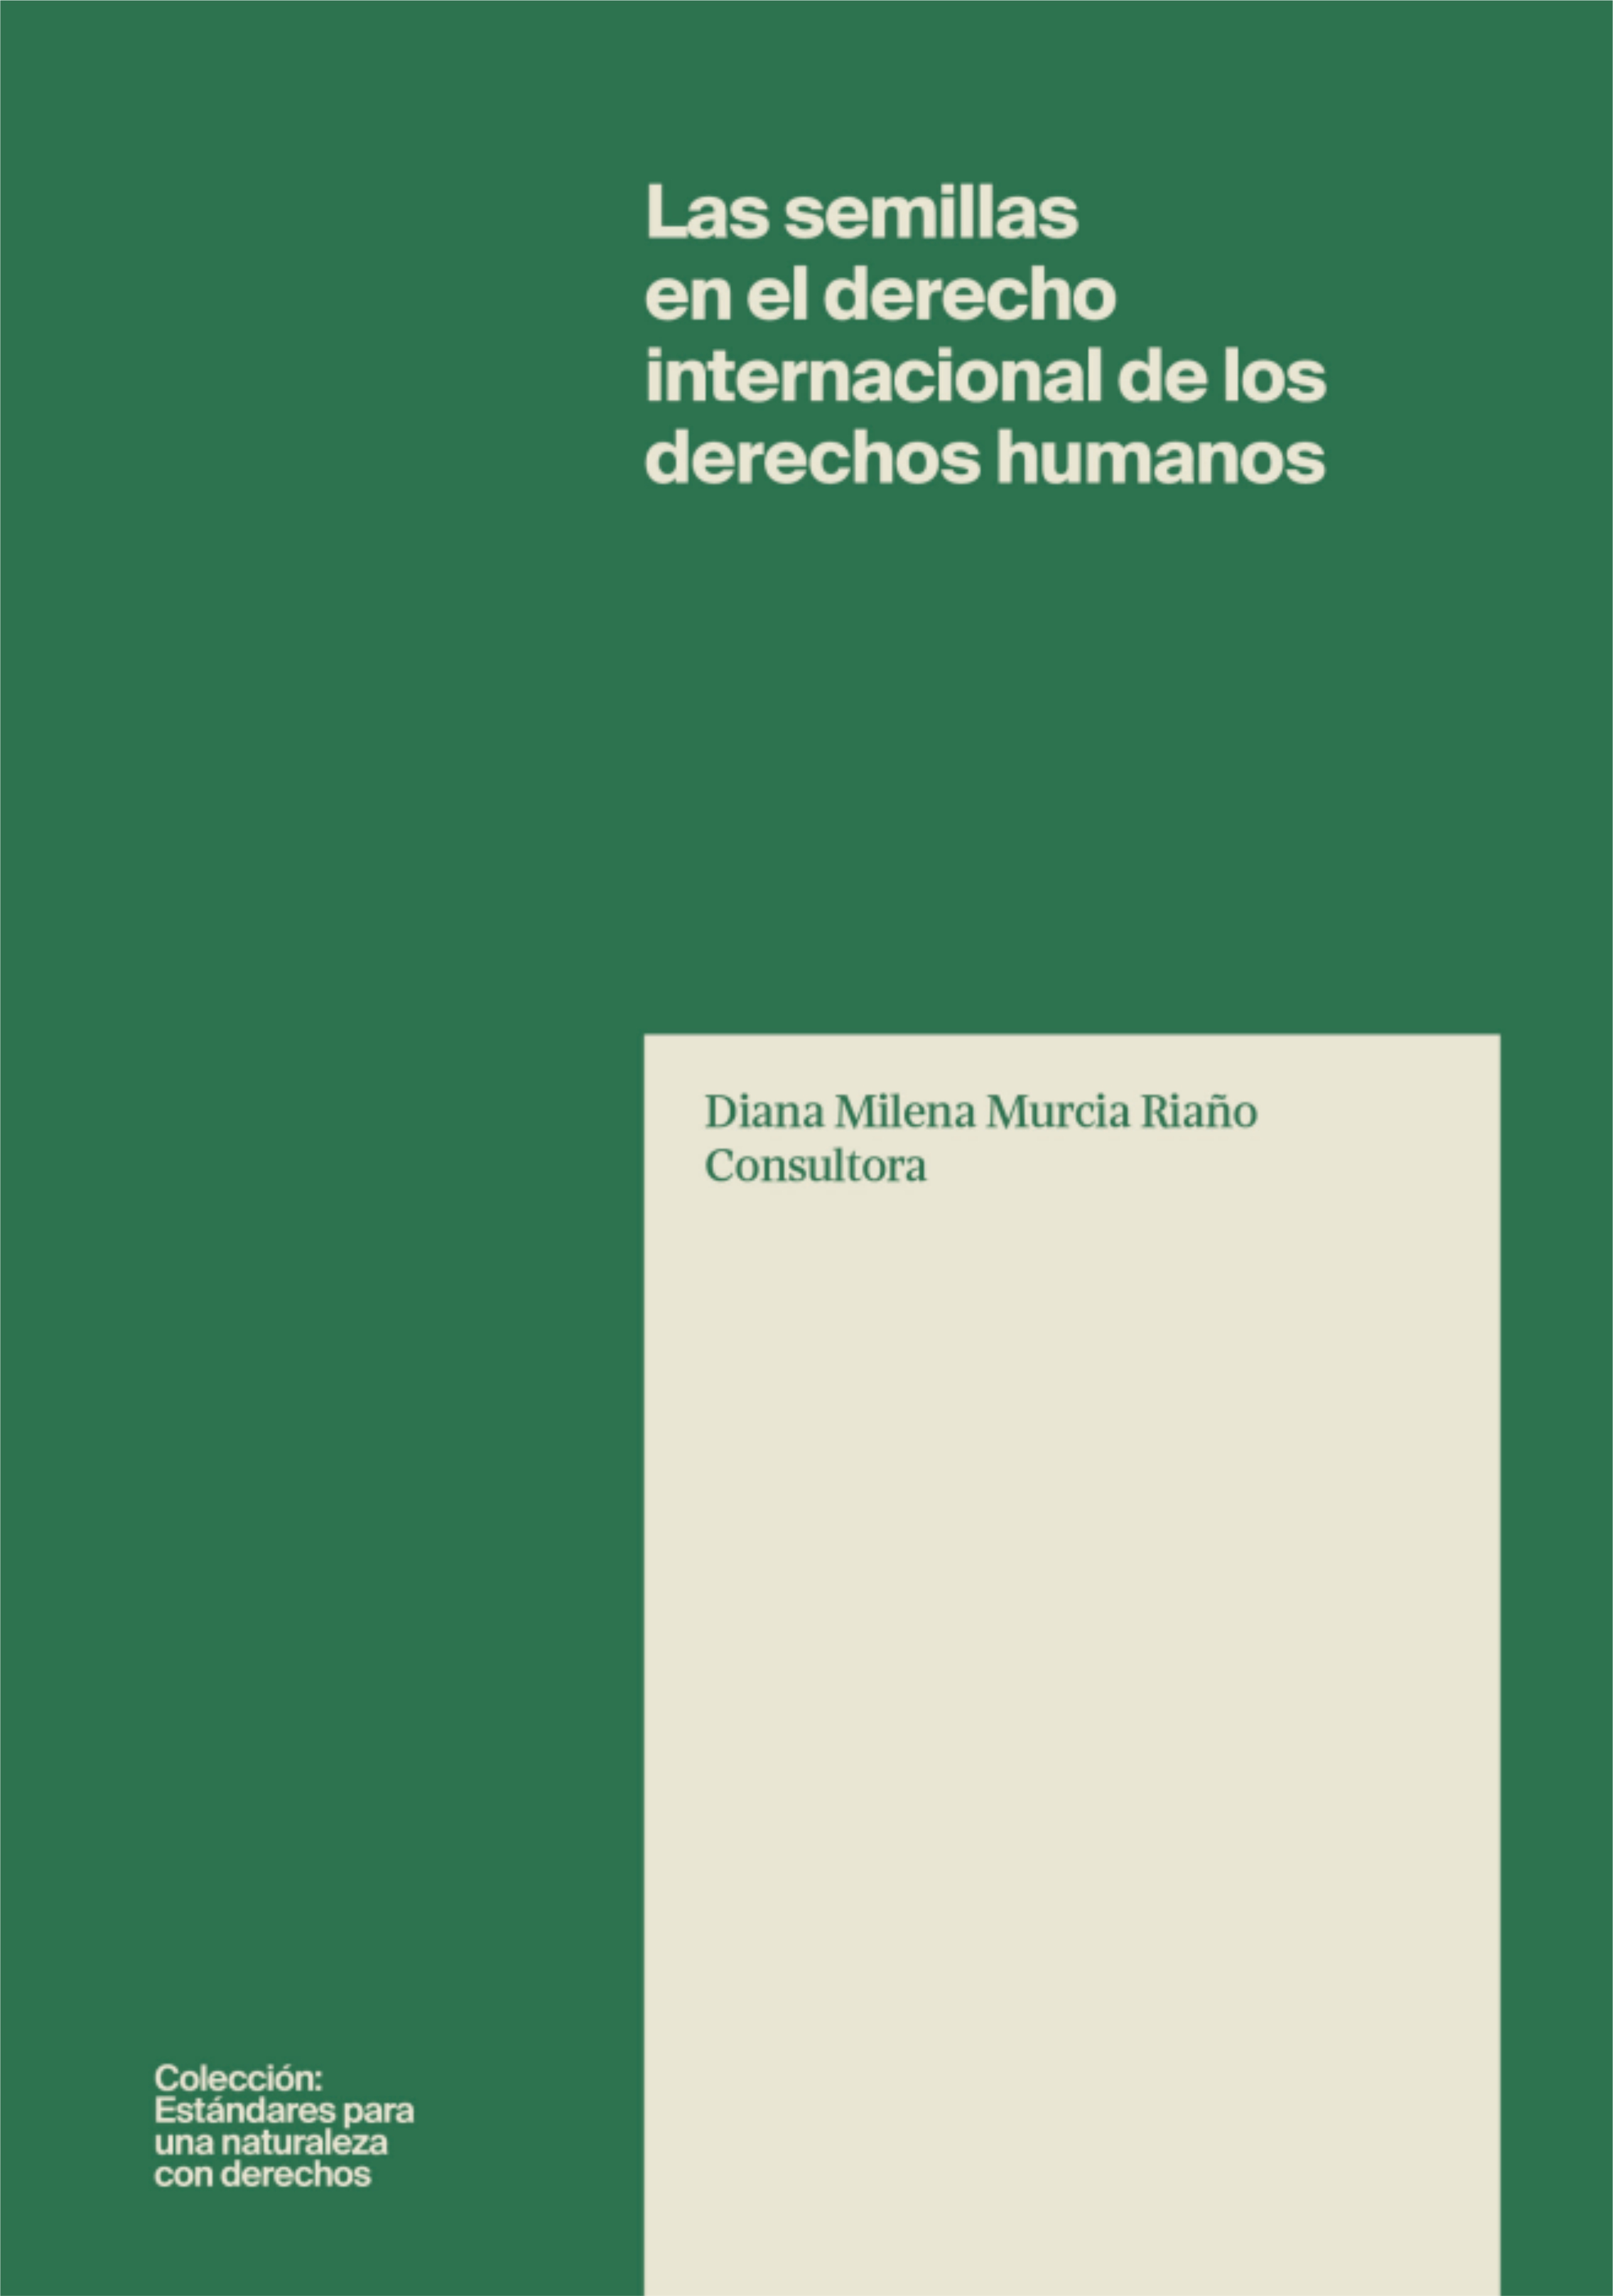 Grafica alusiva a Las semillas en el derecho internacional  de los derechos humanos